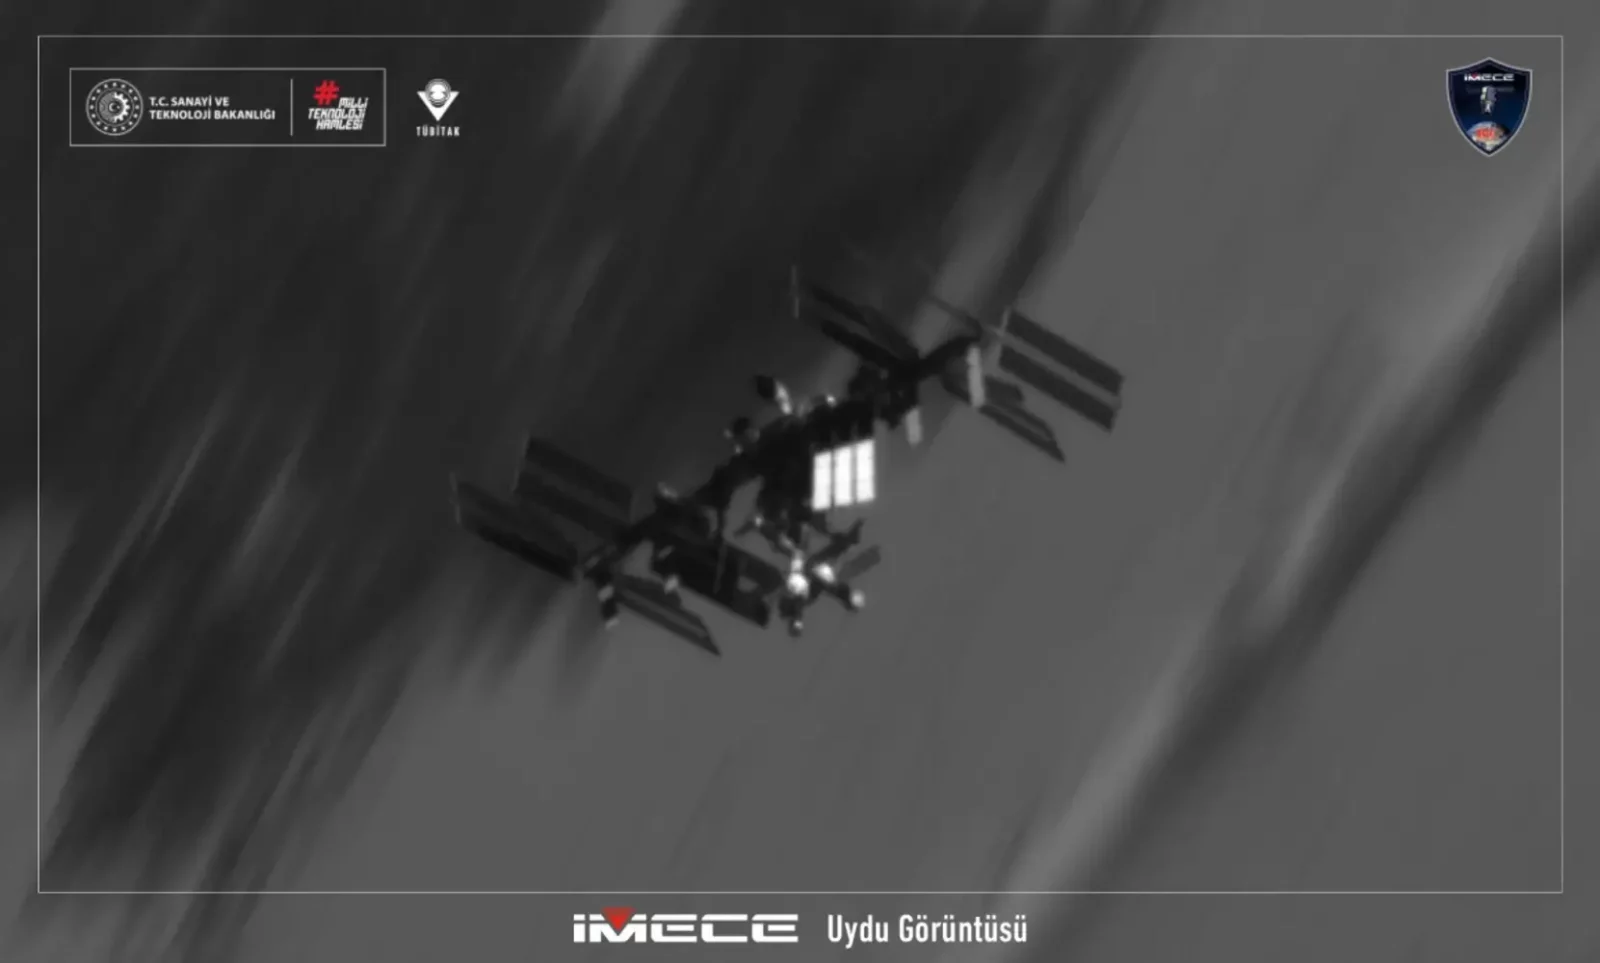 Tübitak Uzay İMECE uydusu ISS görüntüleme görevi